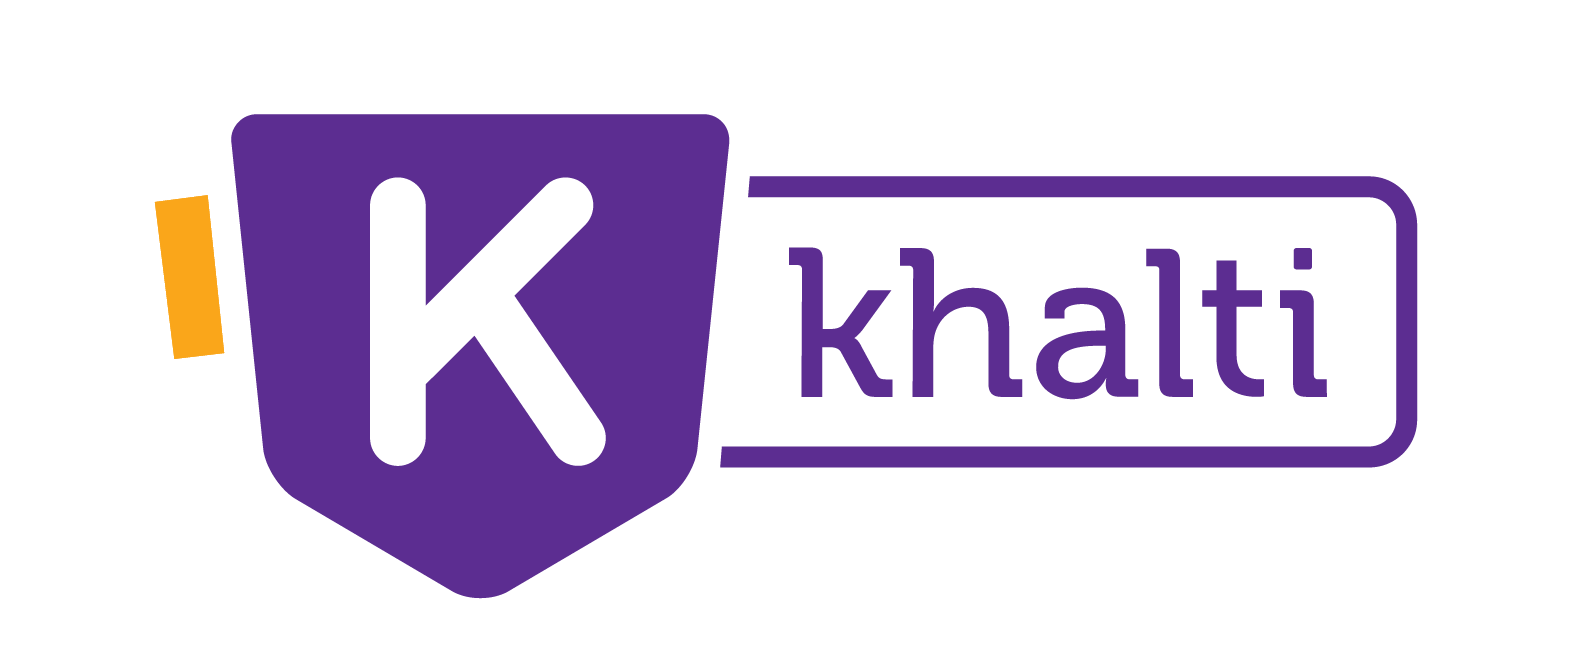 khalti-logo